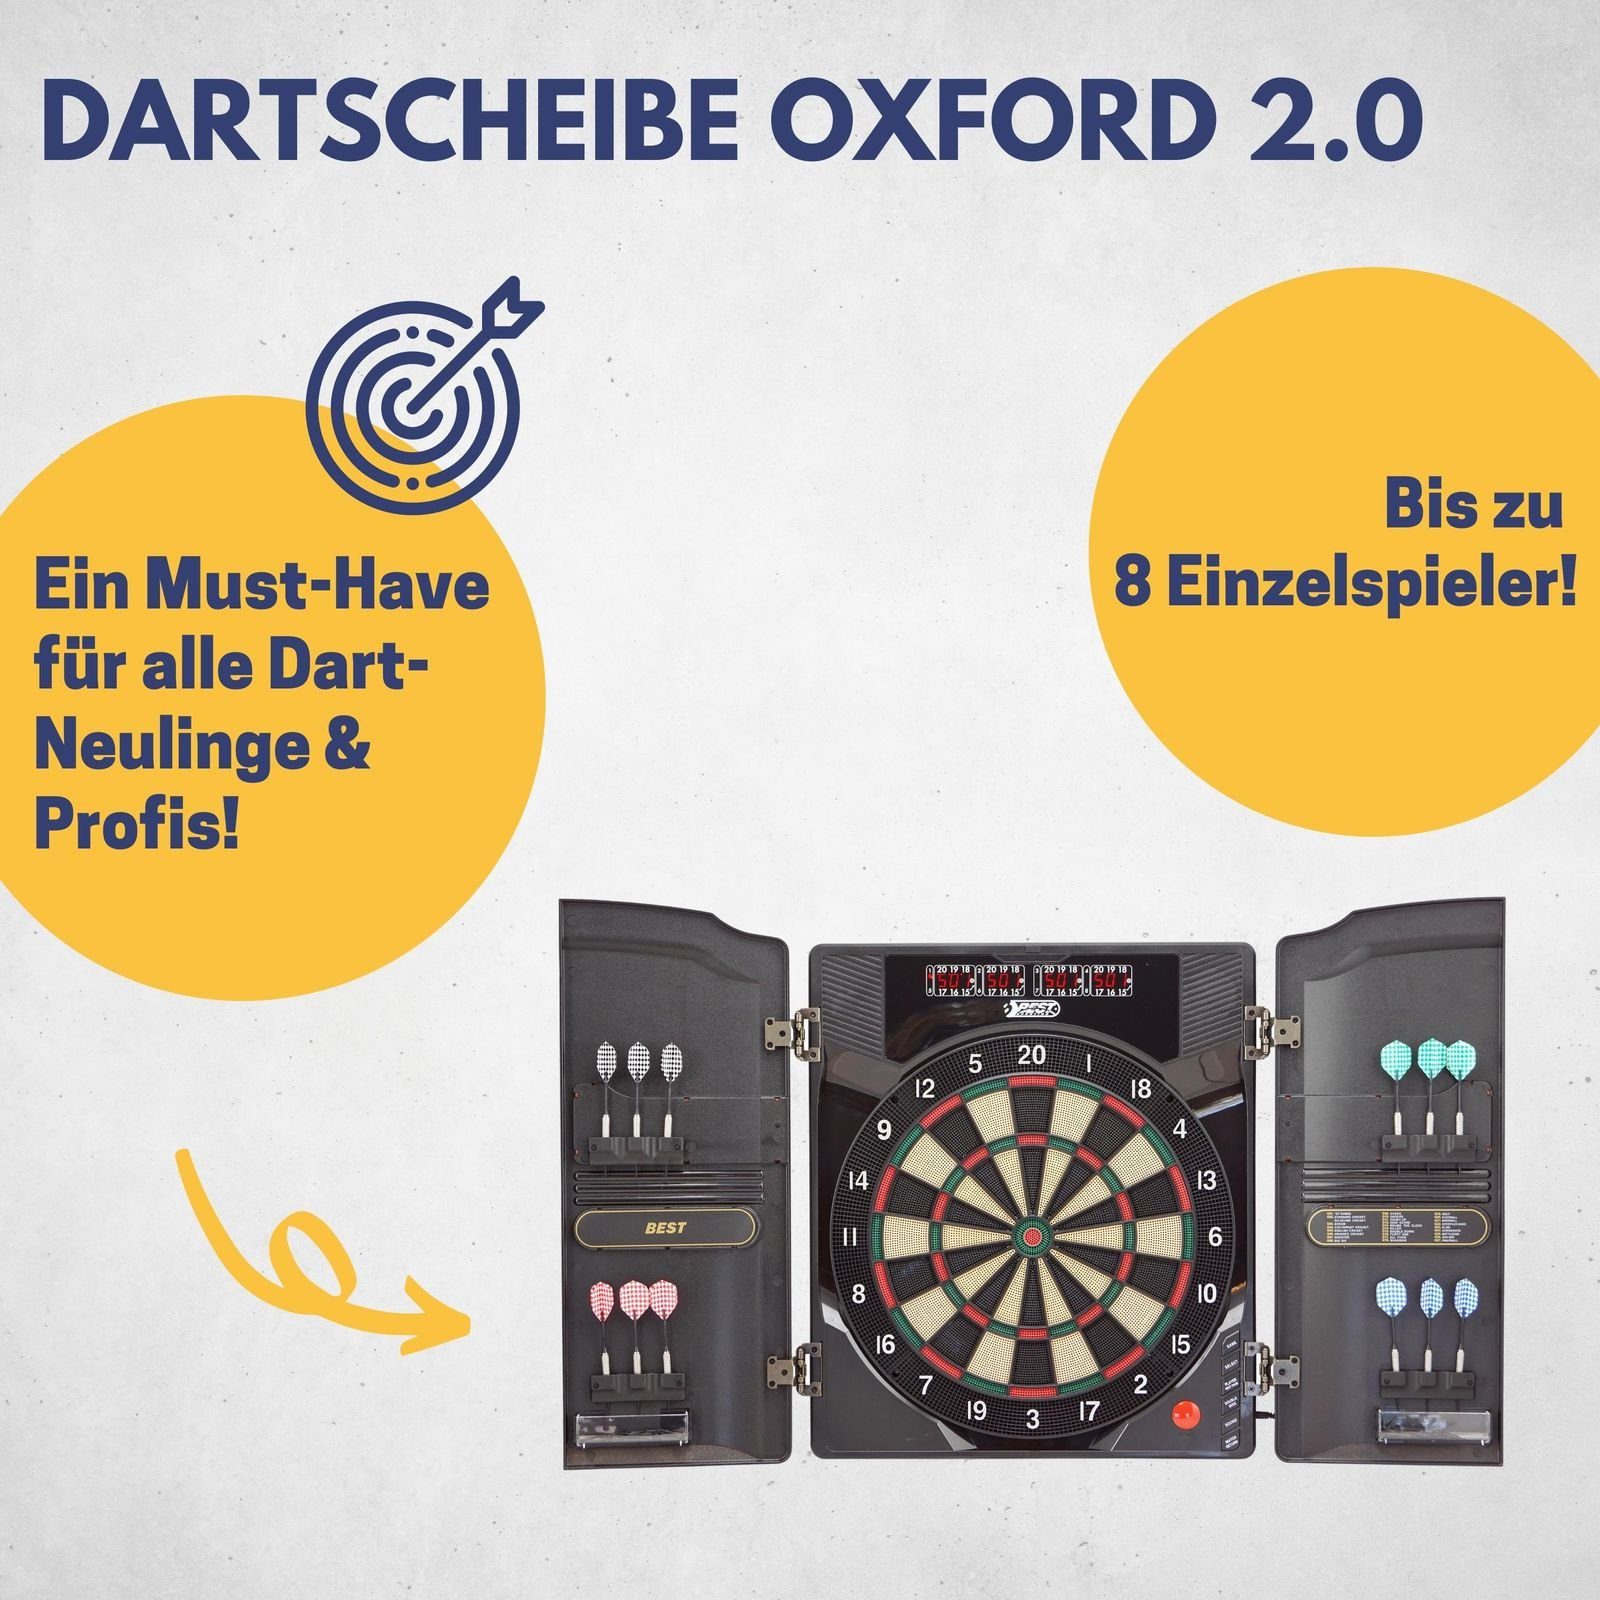 B Best Sporting Dartautomat Dartboard mit Oxford elektronische 2.0 Dartscheibe Walnuss-Optik LED-Anzeige, Kabinett mit